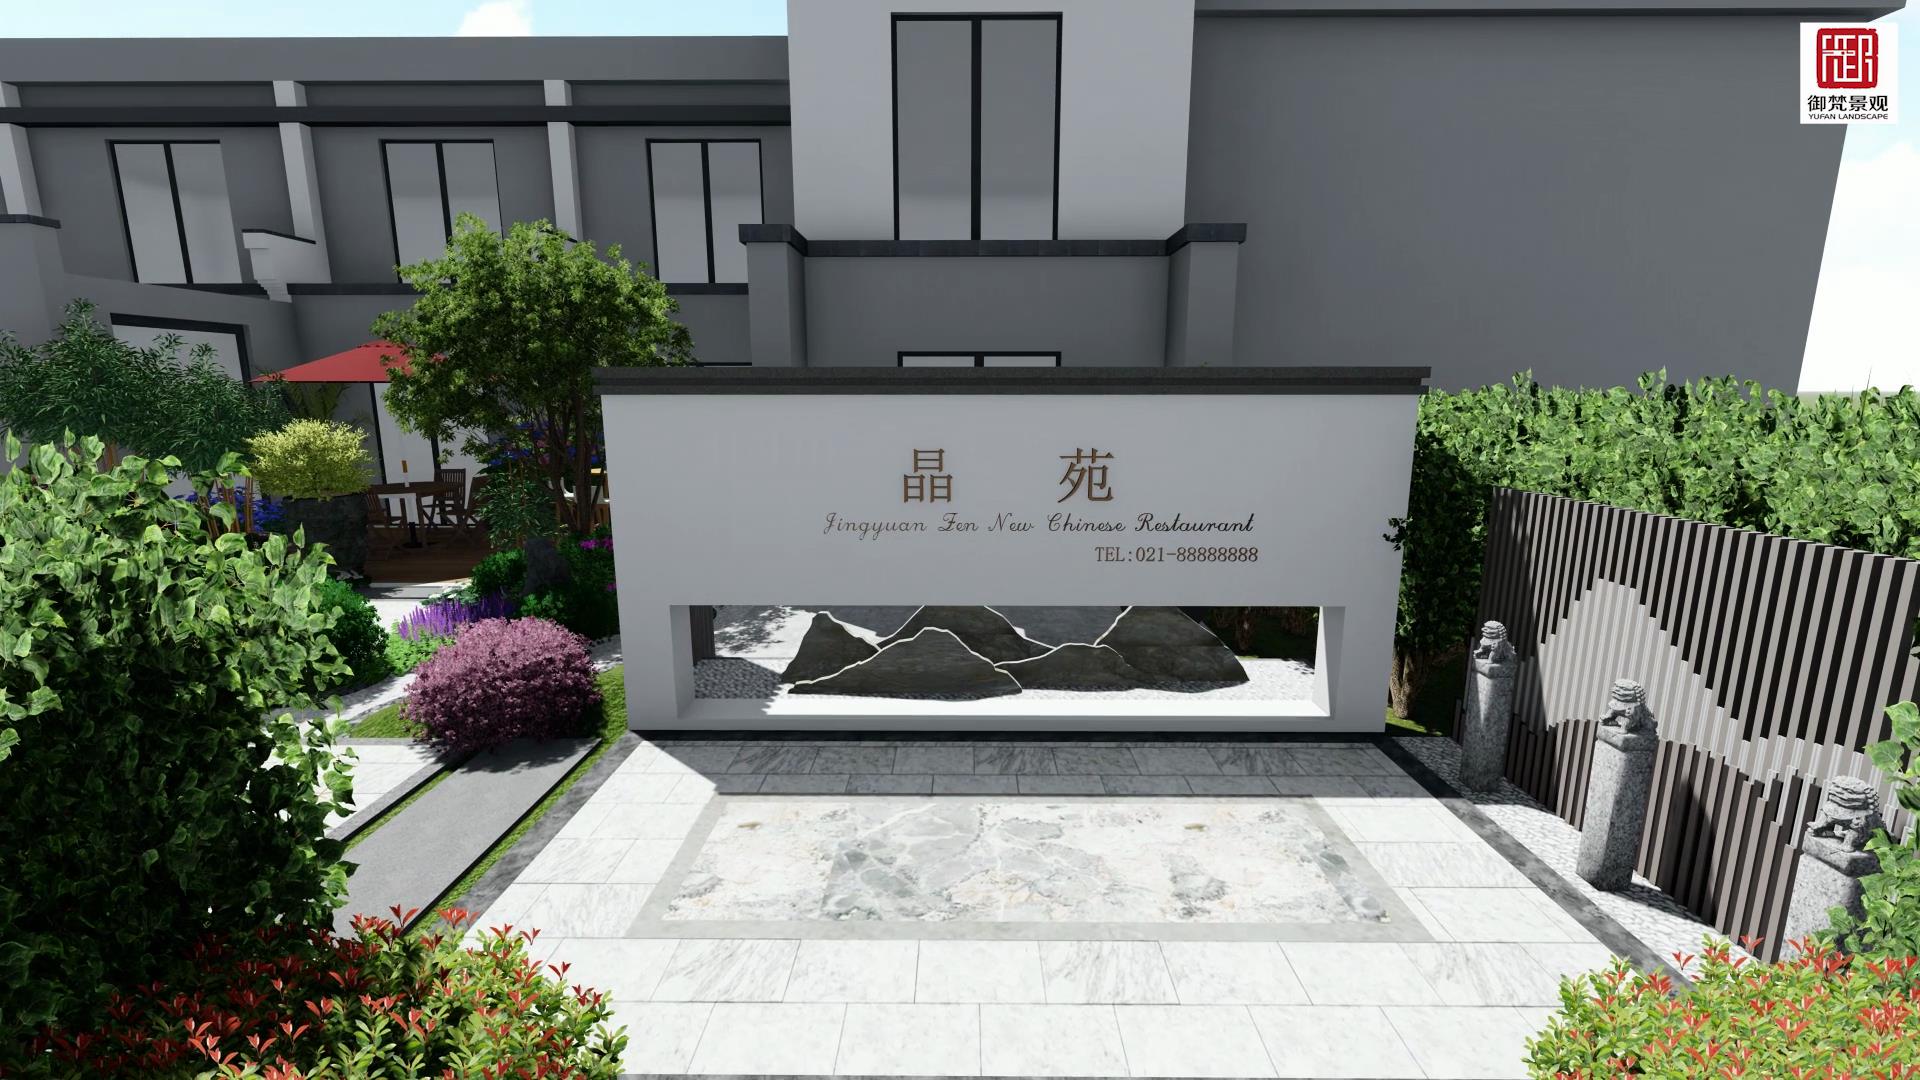  新中式庭院景观设计 